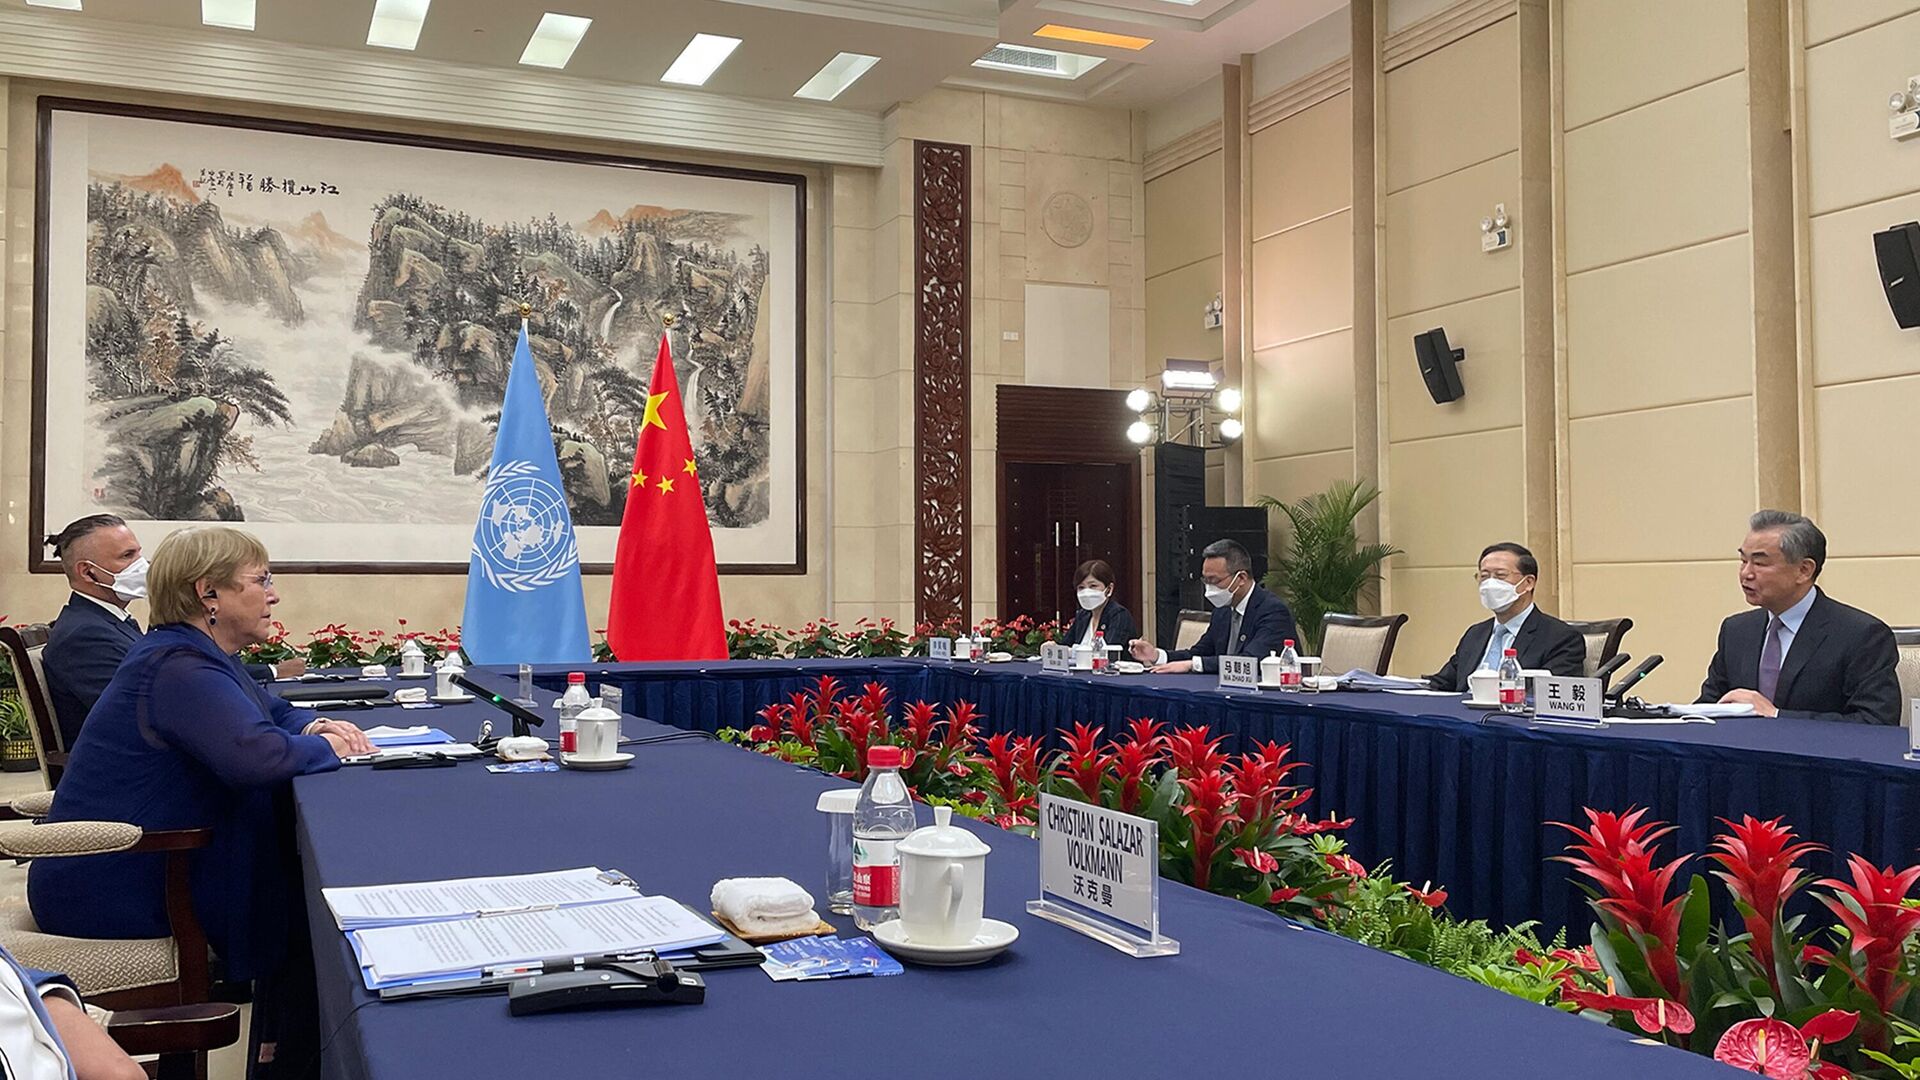 Визит верховного представителя ООН по правам человека Мишель Бачелет в Китай  - Sputnik Азербайджан, 1920, 02.06.2022